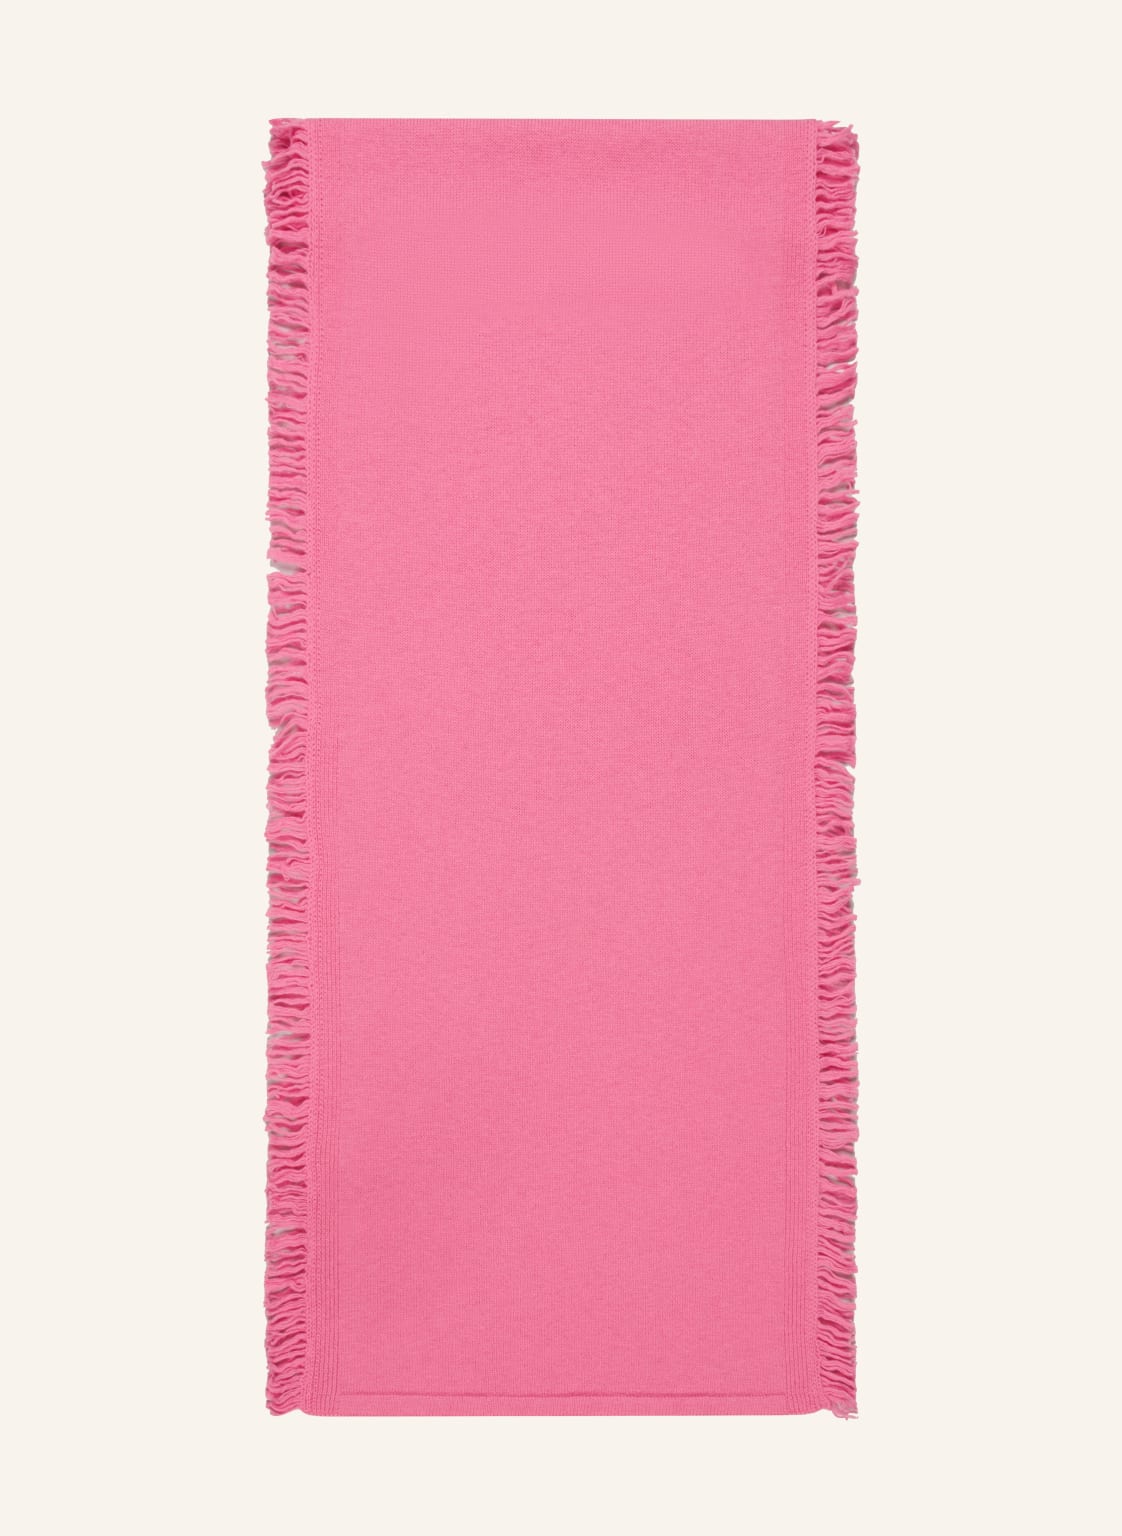 Maerz Muenchen Schal pink von maerz muenchen